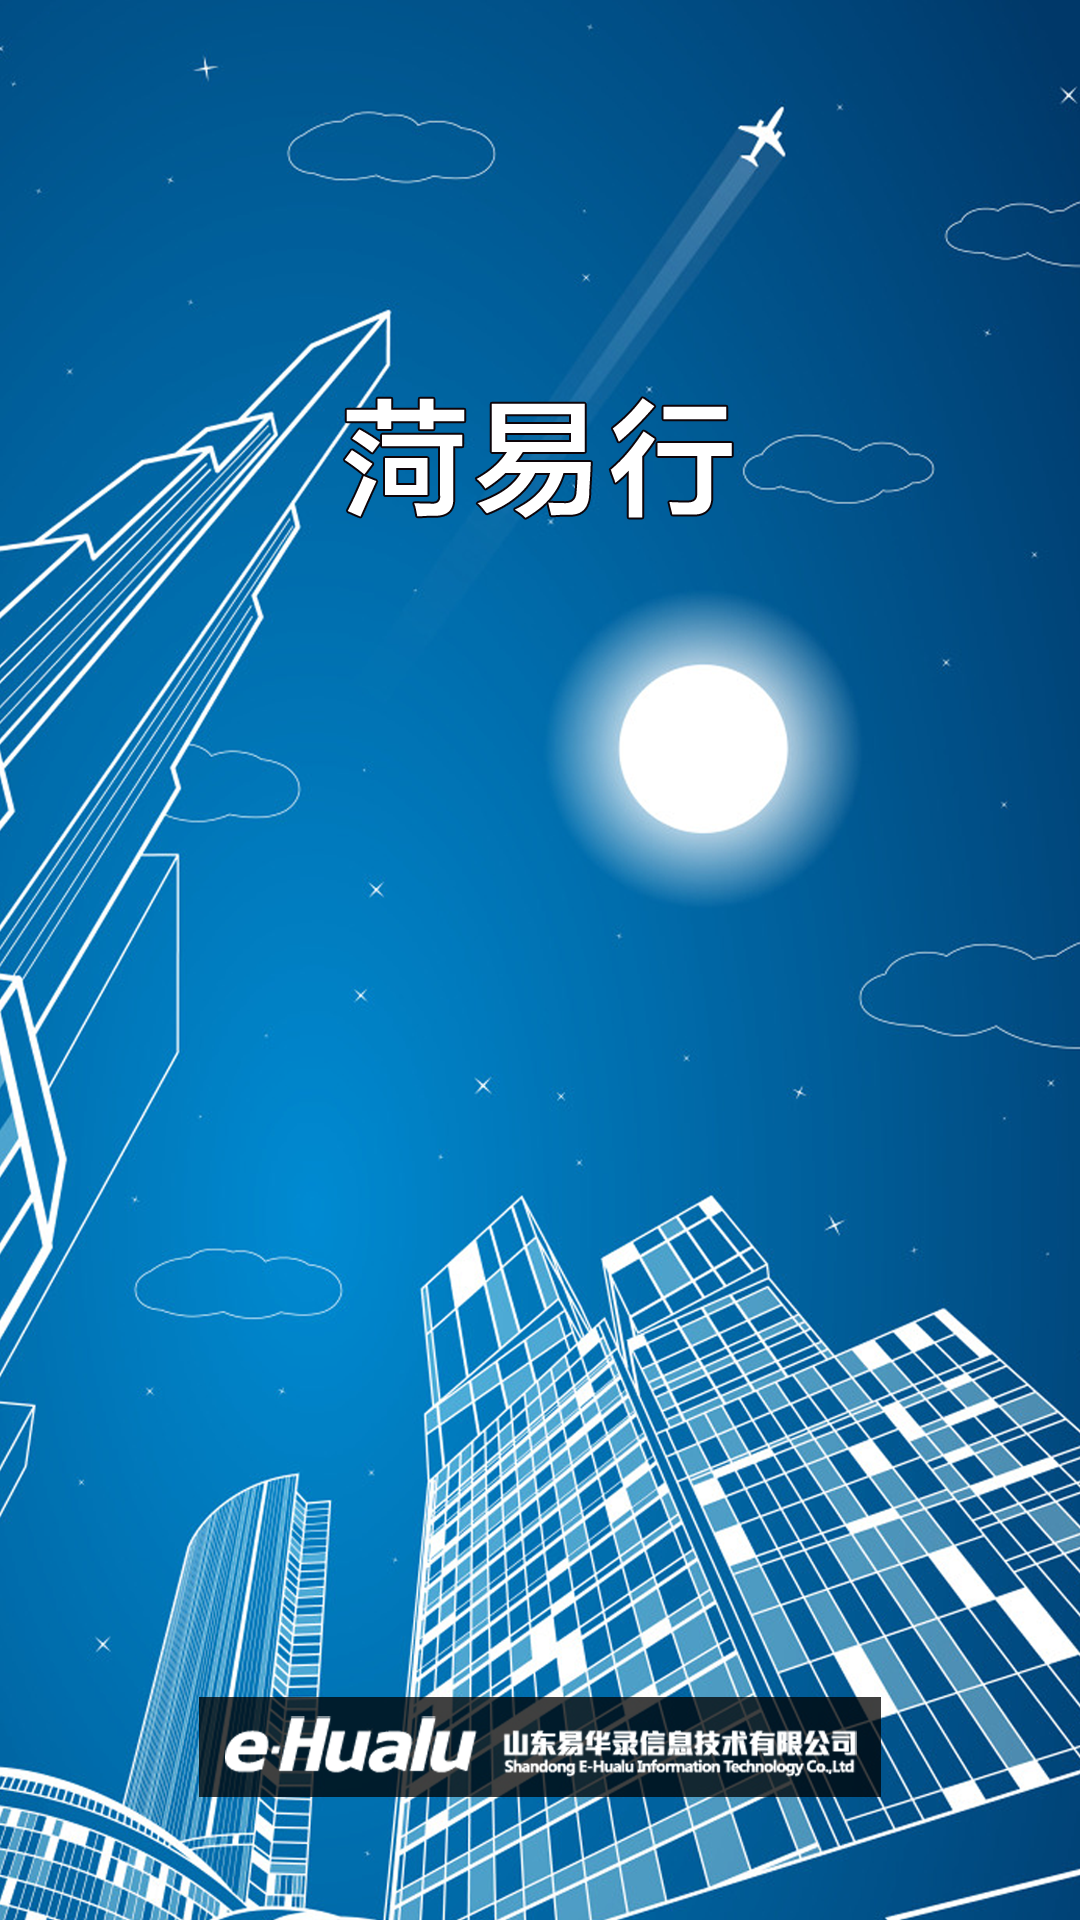 菏易行最新版下载-菏易行appv1.2.34-release 官方版